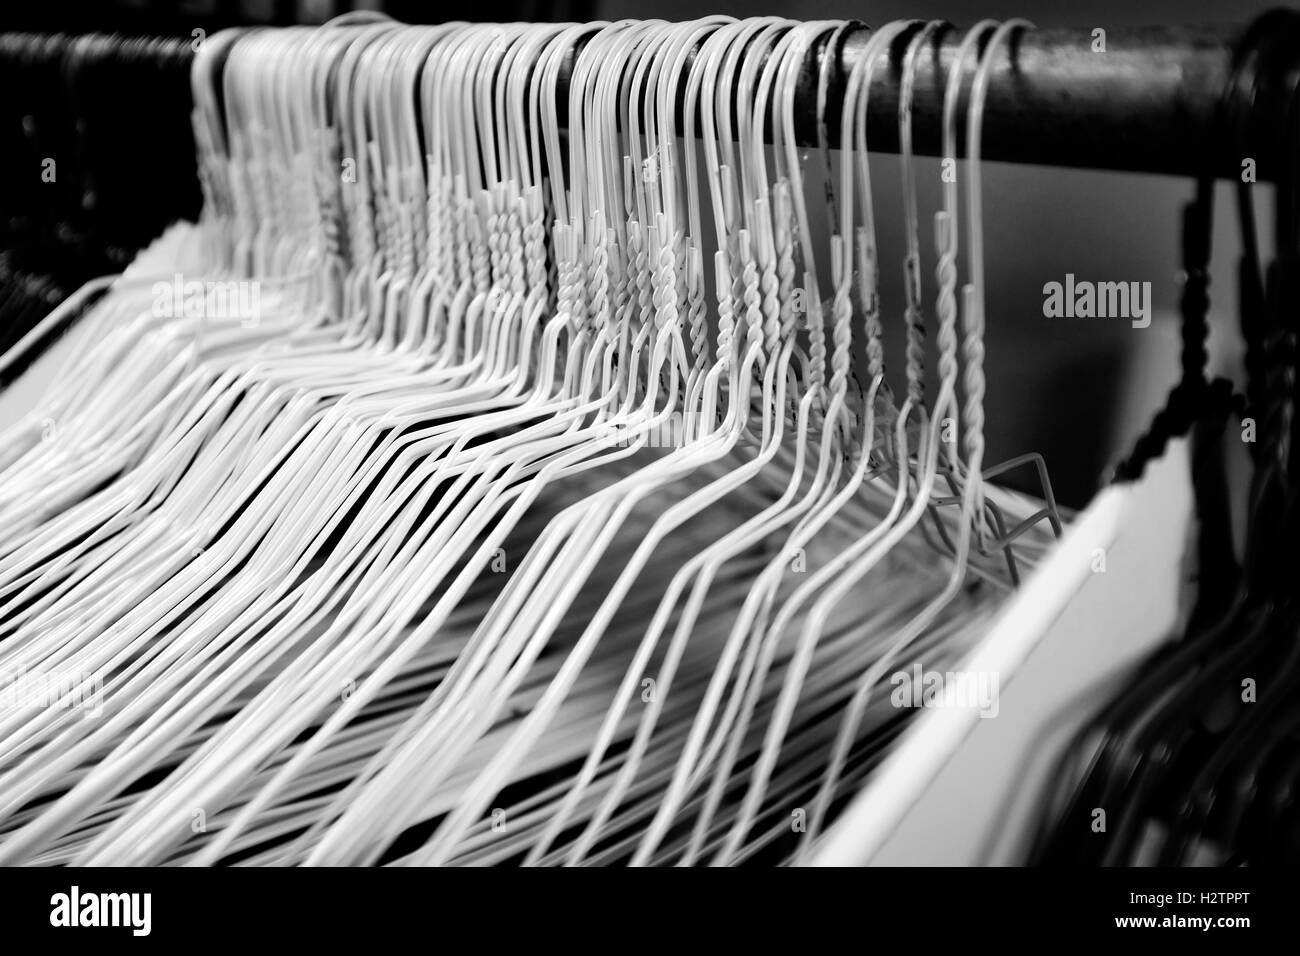 Viele verschiedene Metalldraht Kleiderbügel auf Pole für hängende Kleidung im Schrank Lagerung Stockfoto